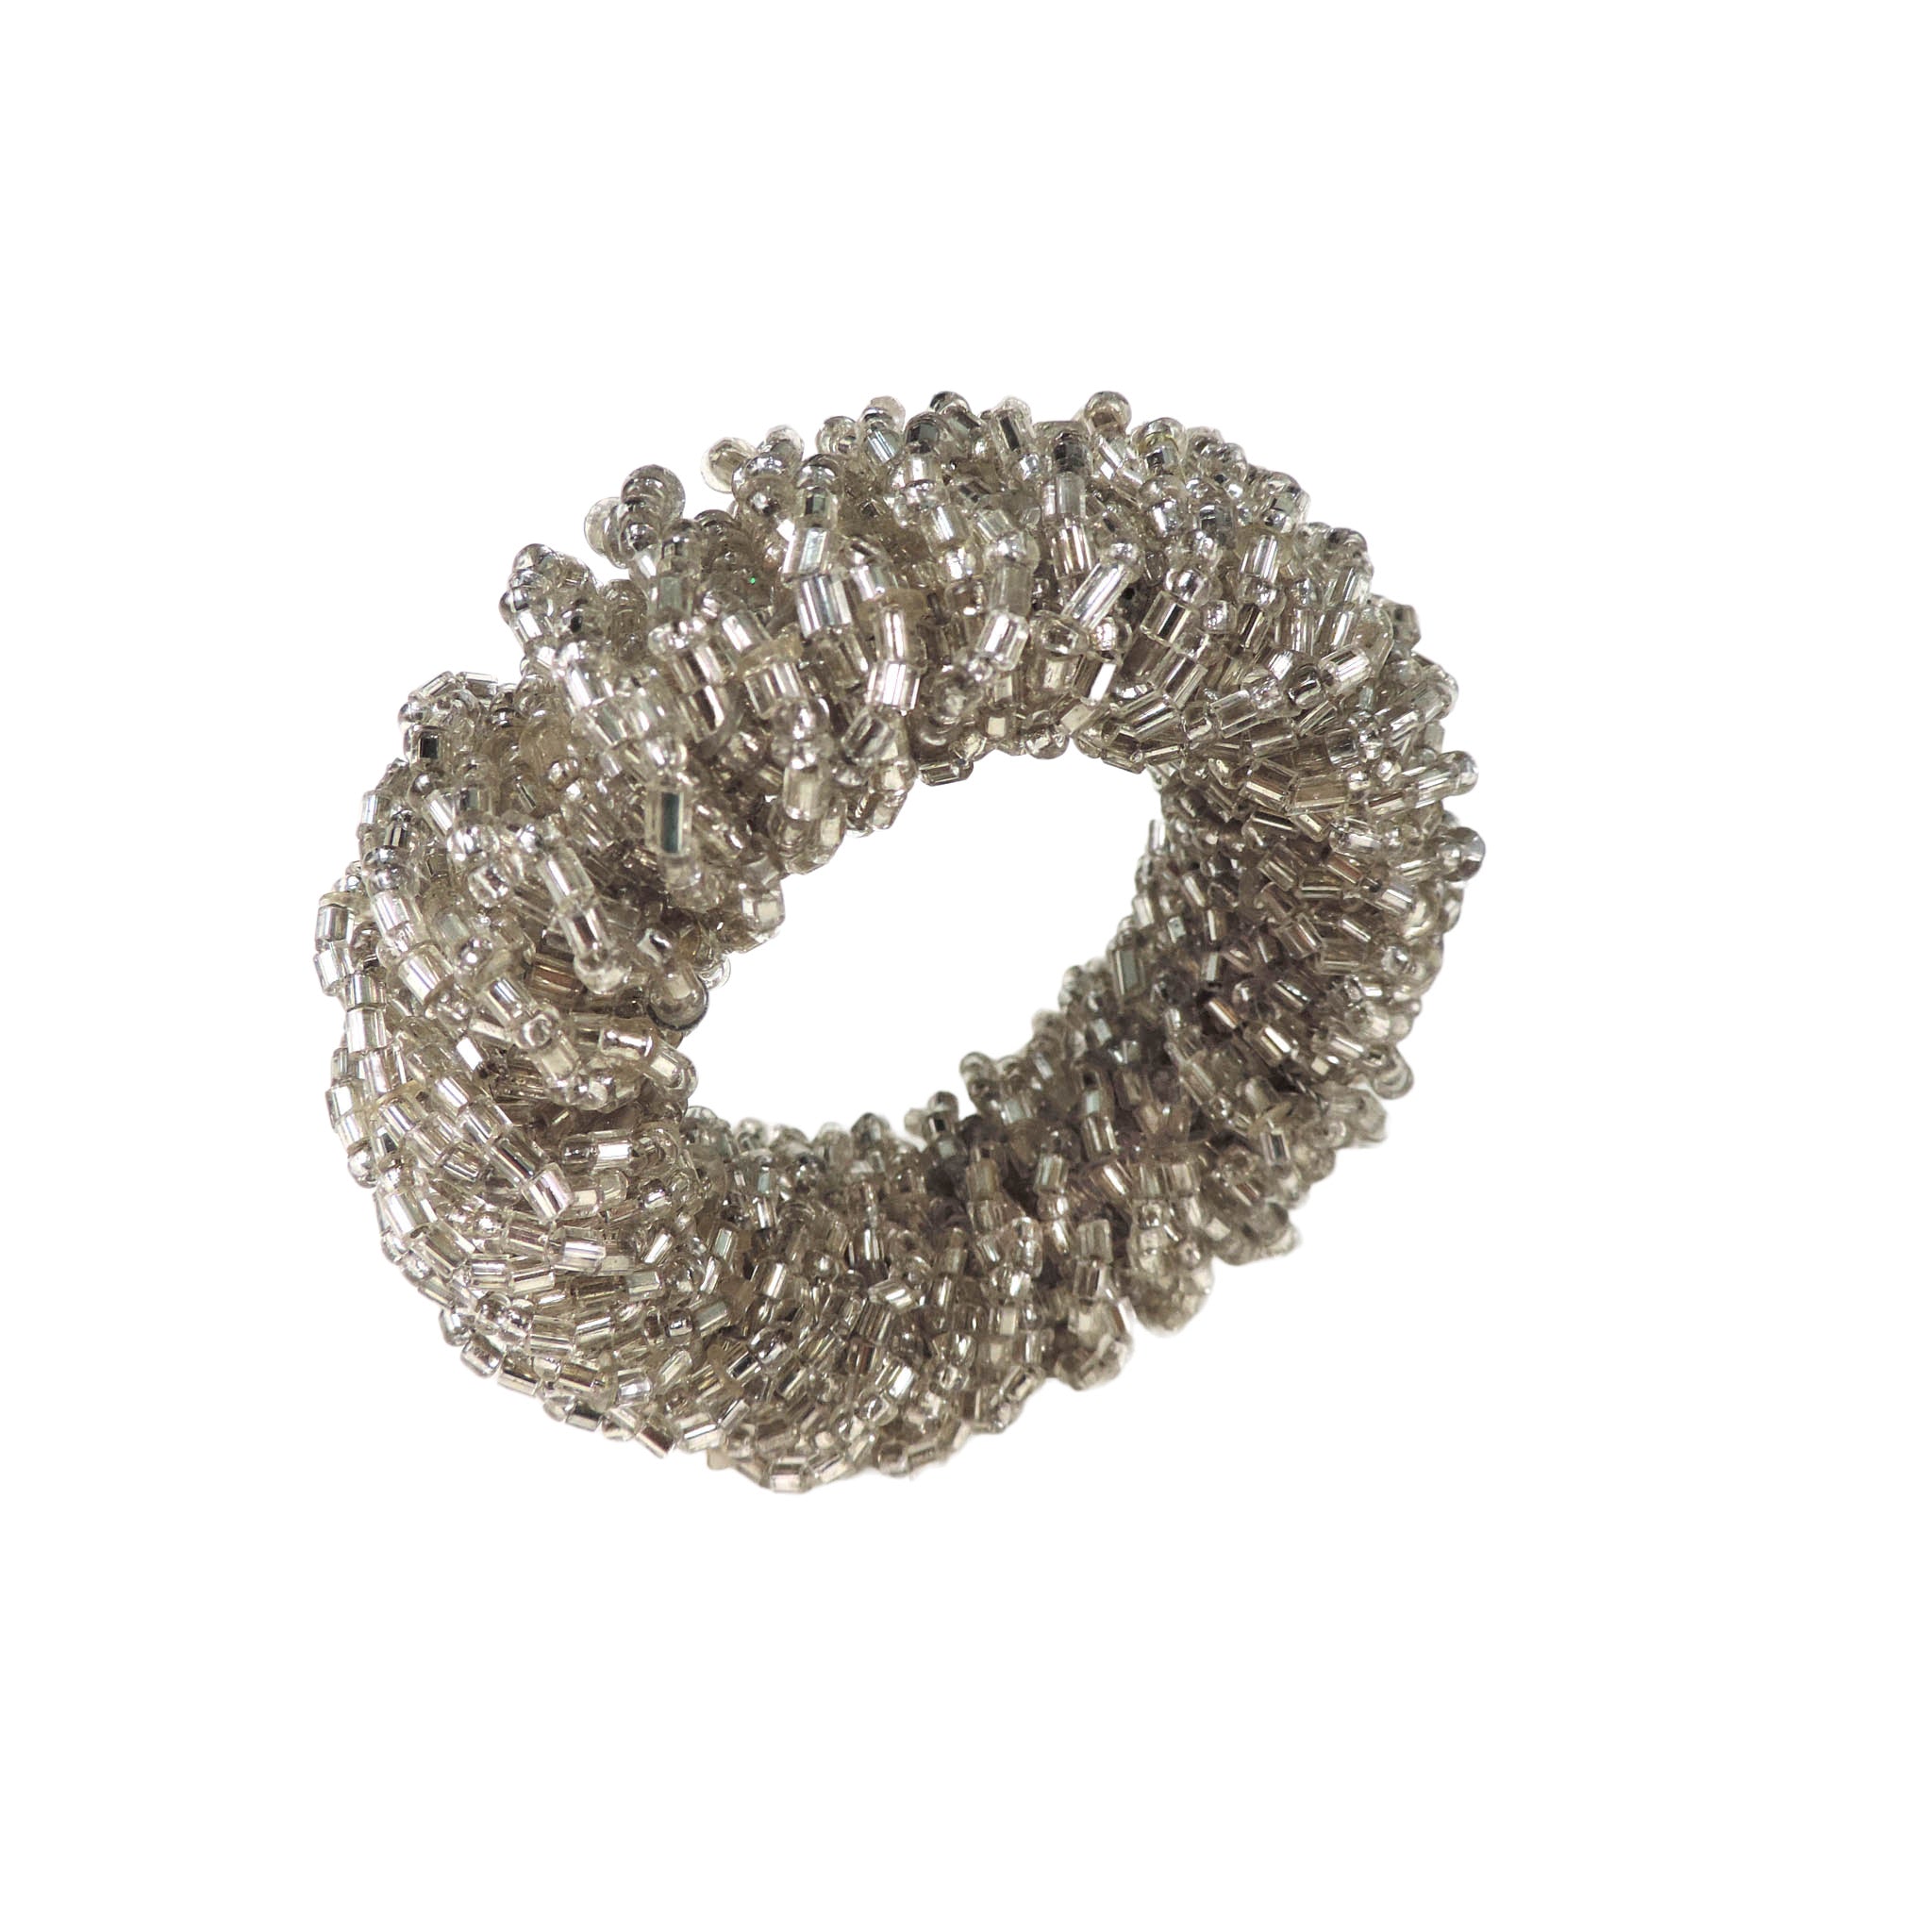 Bling-Bling Napkin Ring in Silver, Set of 4